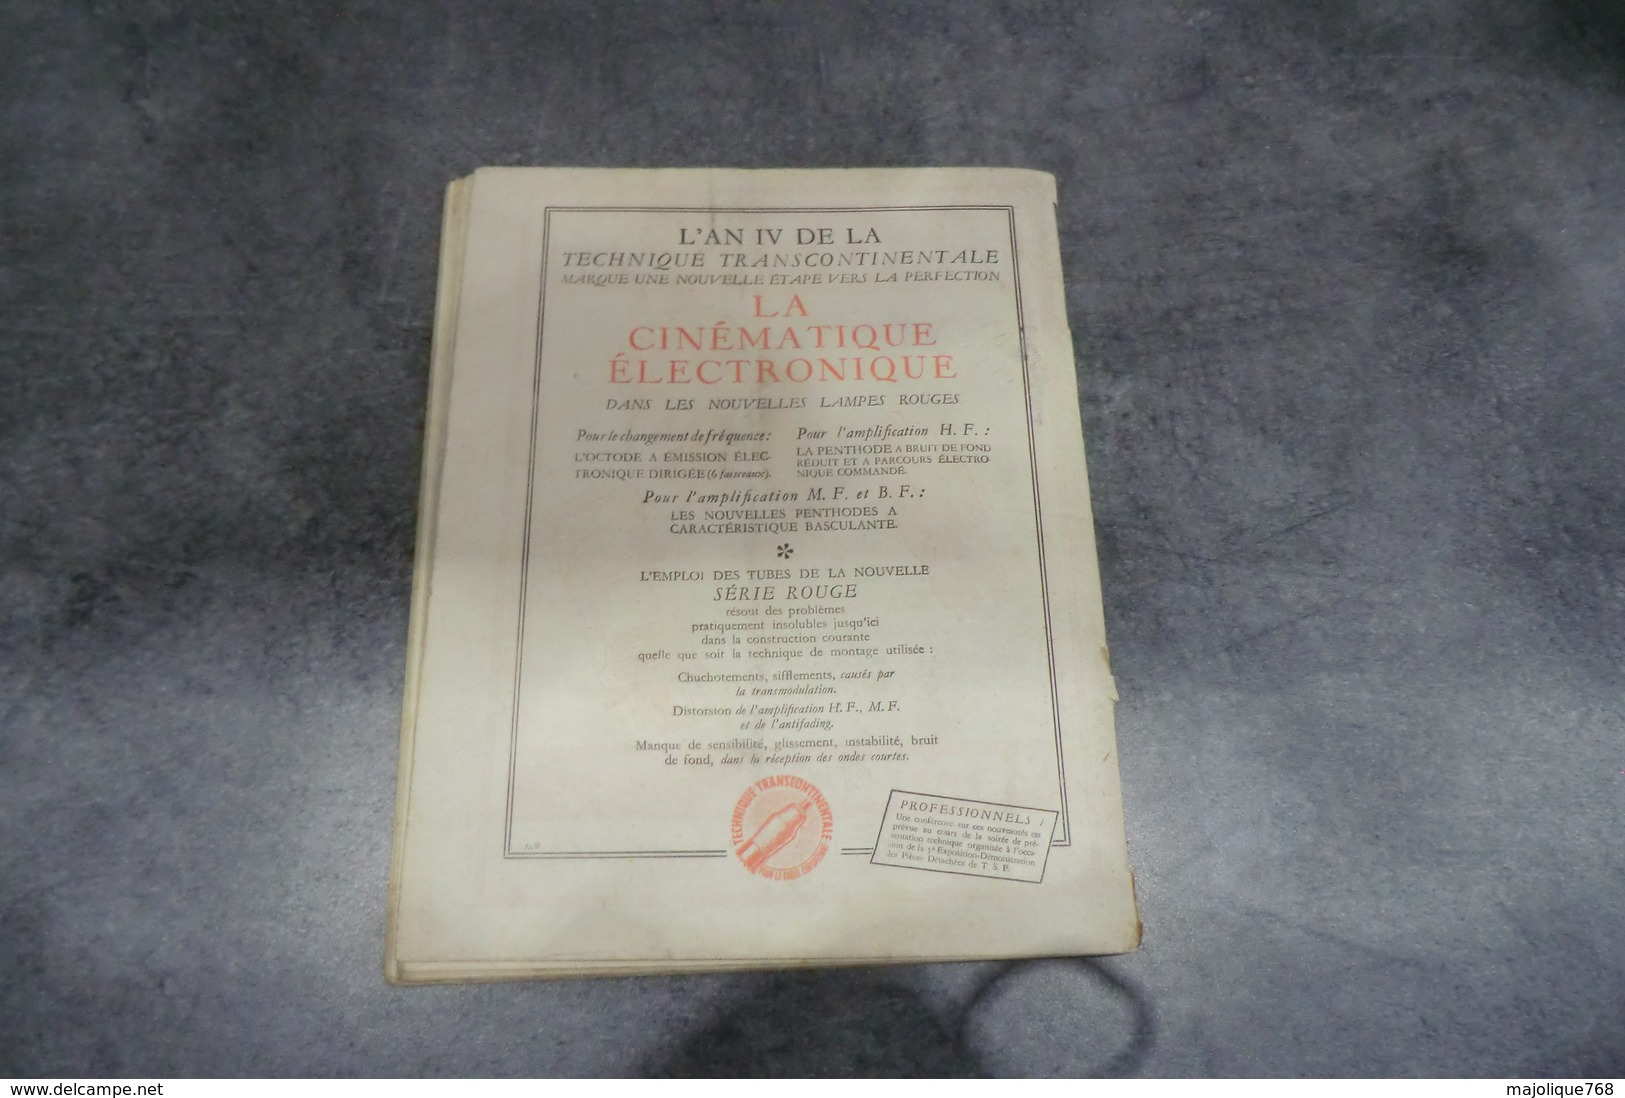 Revue Toute La Radio Par Eugène Aisberg - N°49 De Février 1938 - - Componenti